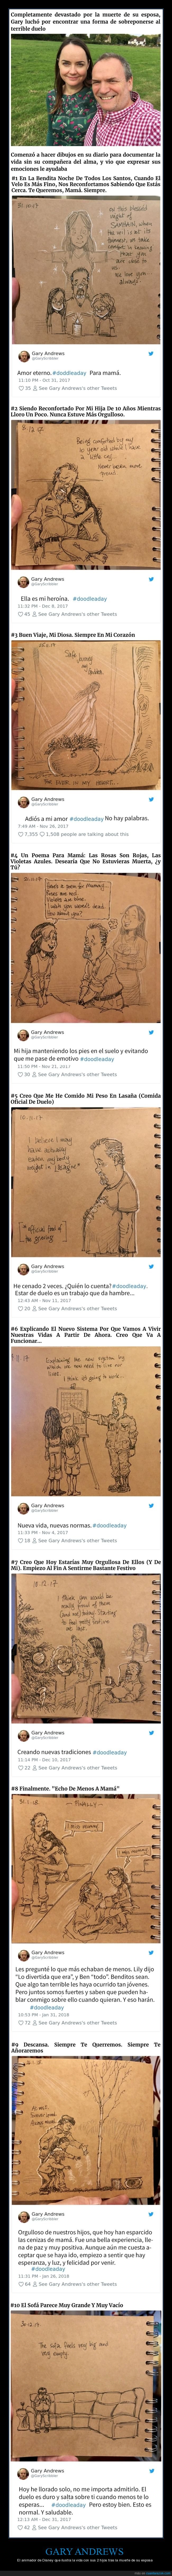 gary andrews,muerte,esposa,ilustraciones